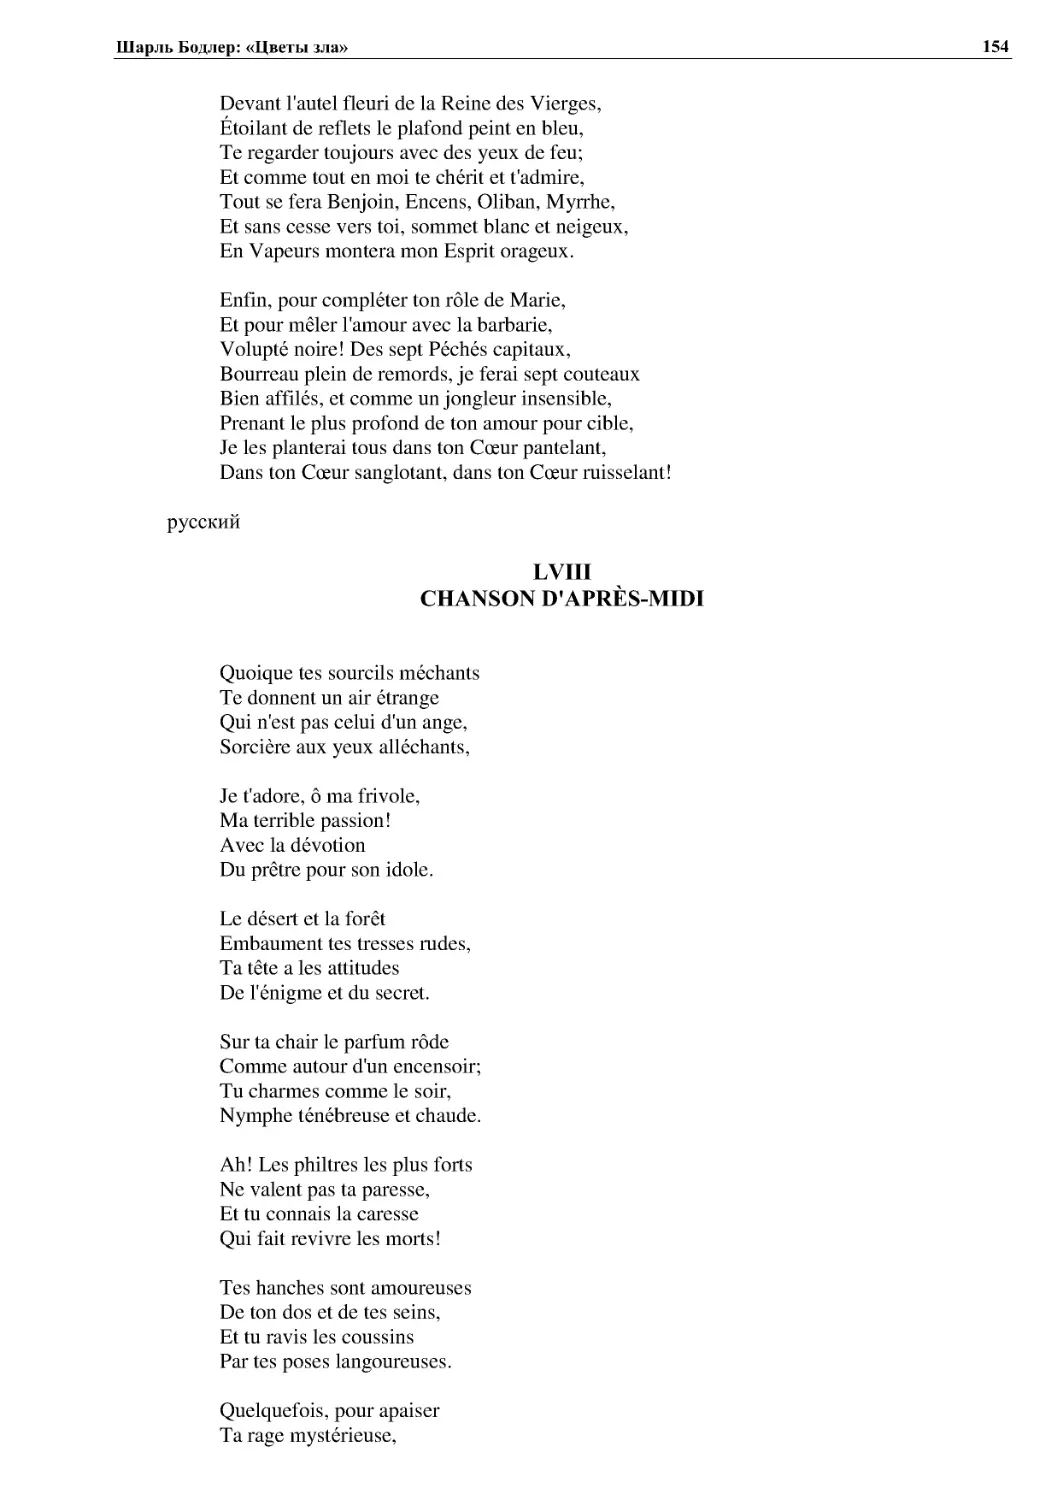 LVIII CHANSON D'APRÈS-MIDI